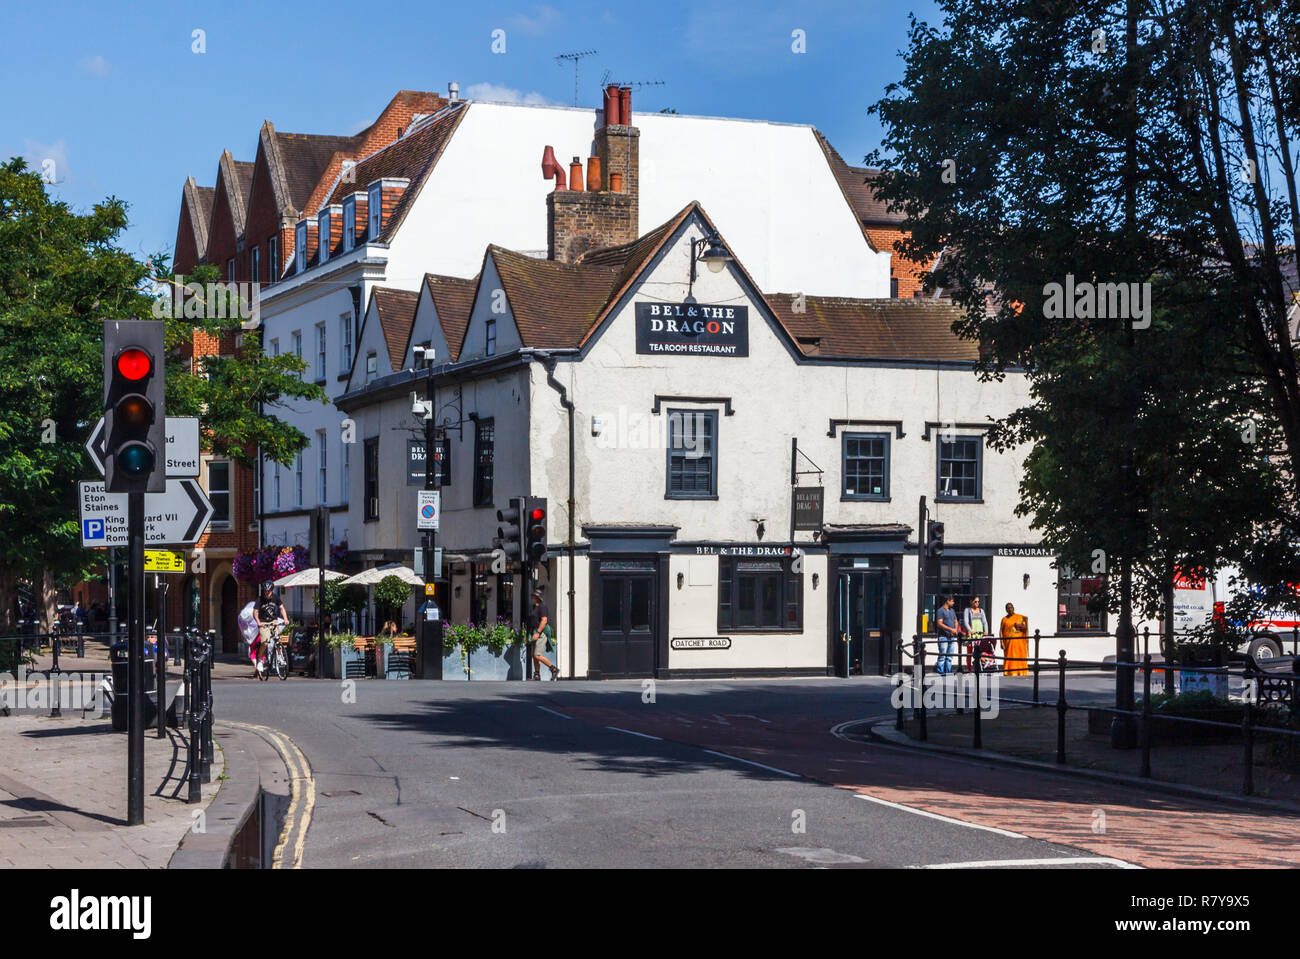 Windsor, Inghilterra - 15 agosto 2015: Il Bel e il Drago teahouse in corrispondenza della giunzione di Datchett road e Thames Road. Il ristorante storico è stato se Foto Stock